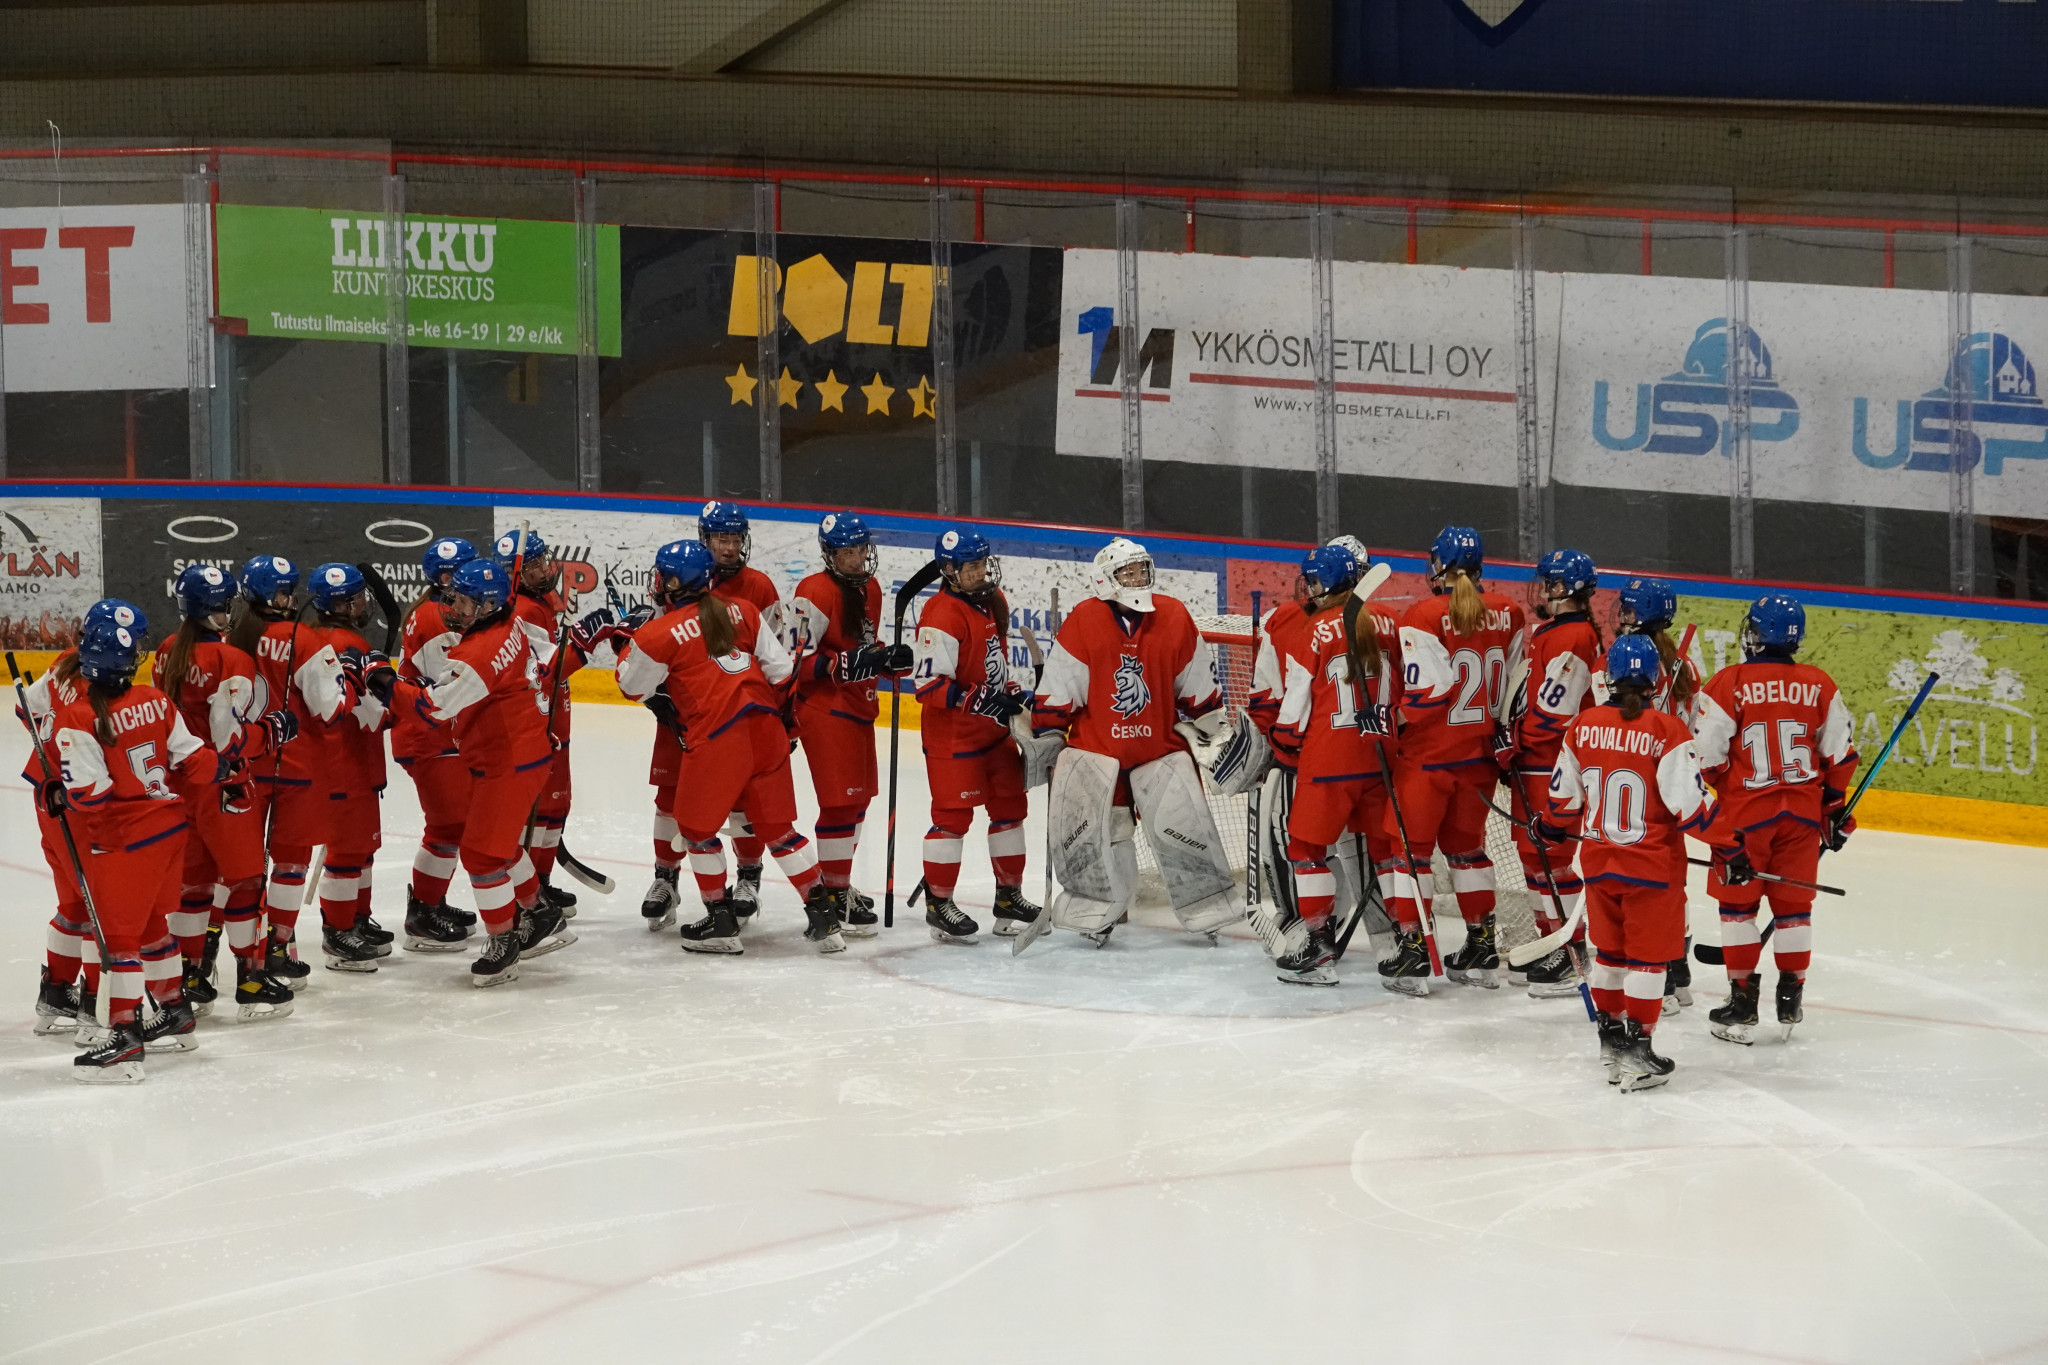 Czech Republic clinched girls' ice hockey gold at the Winter EYOF ©Timo Mustonen/EYOF 2022 Vuokatti